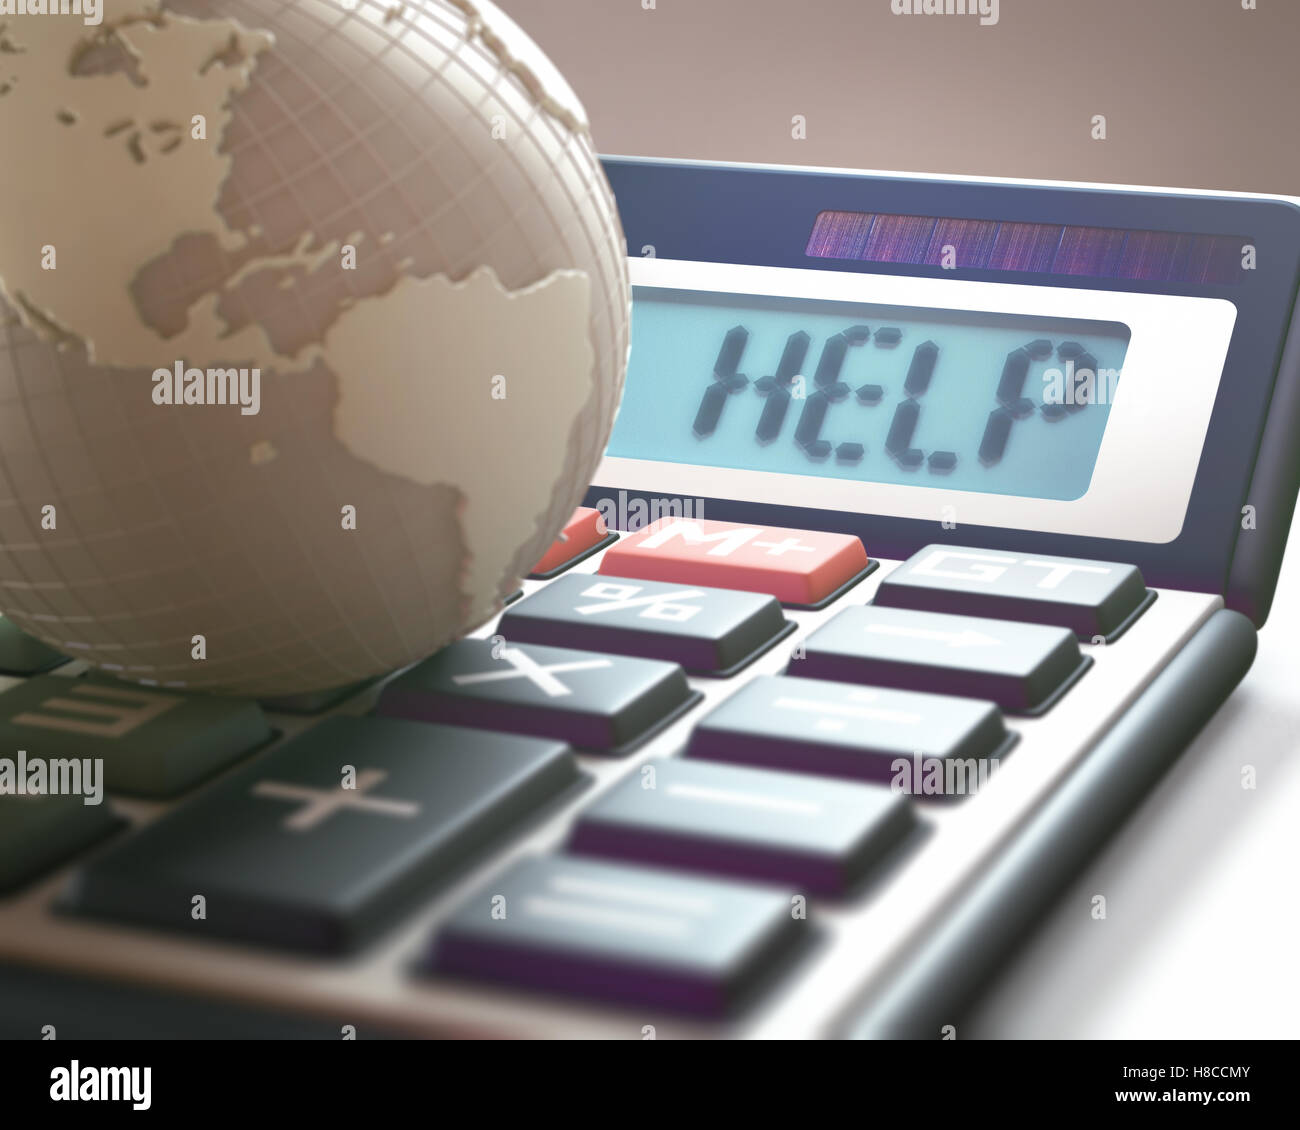 Calcolatrice con la parola help sul display, in rappresentanza di crisi finanziaria mondiale. 3D'illustrazione, il concetto di immagine di Global Giornate mondiali Foto Stock